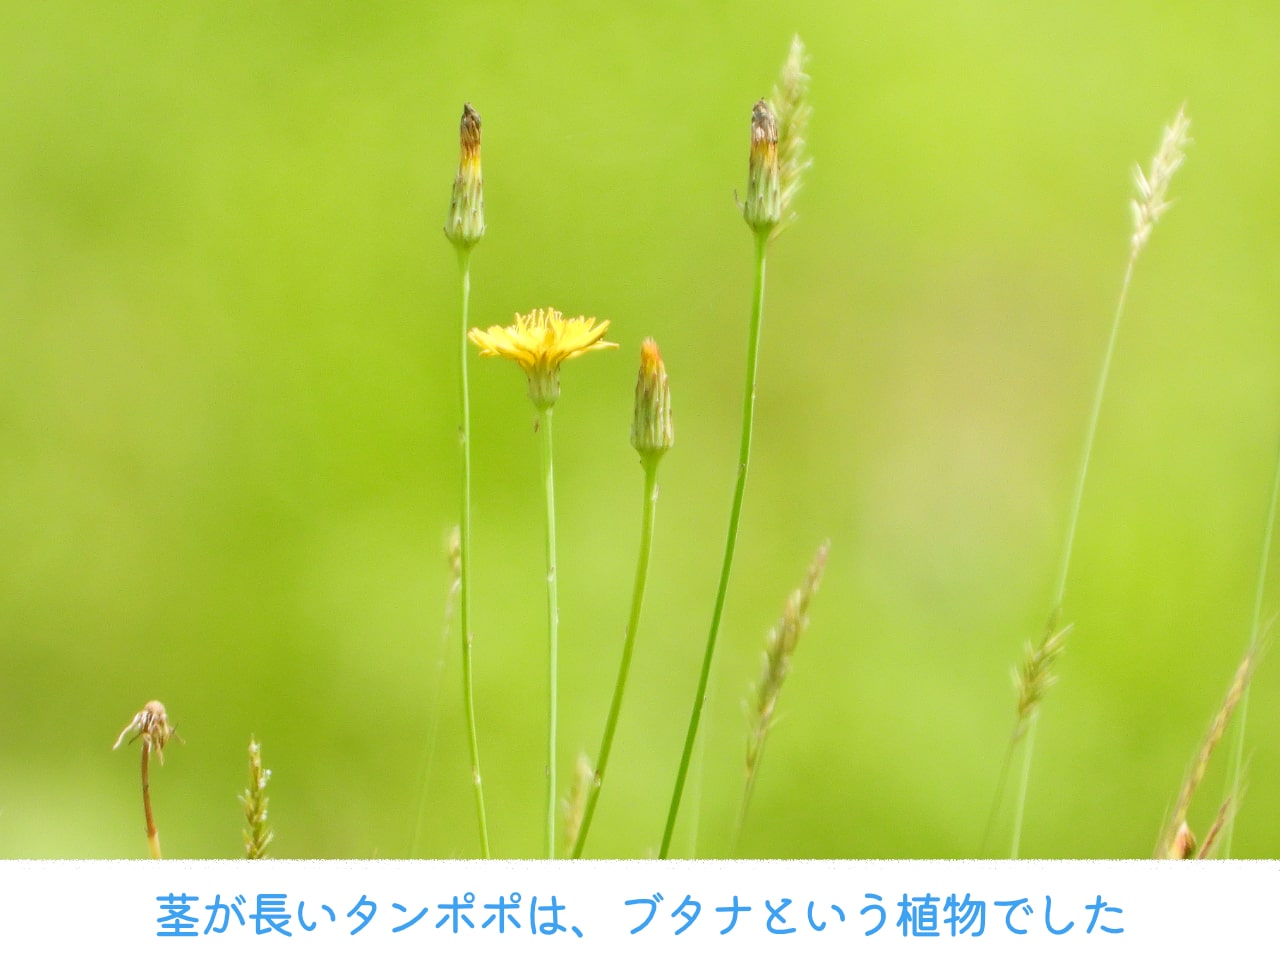 タンポポに似た植物ブタナの写真